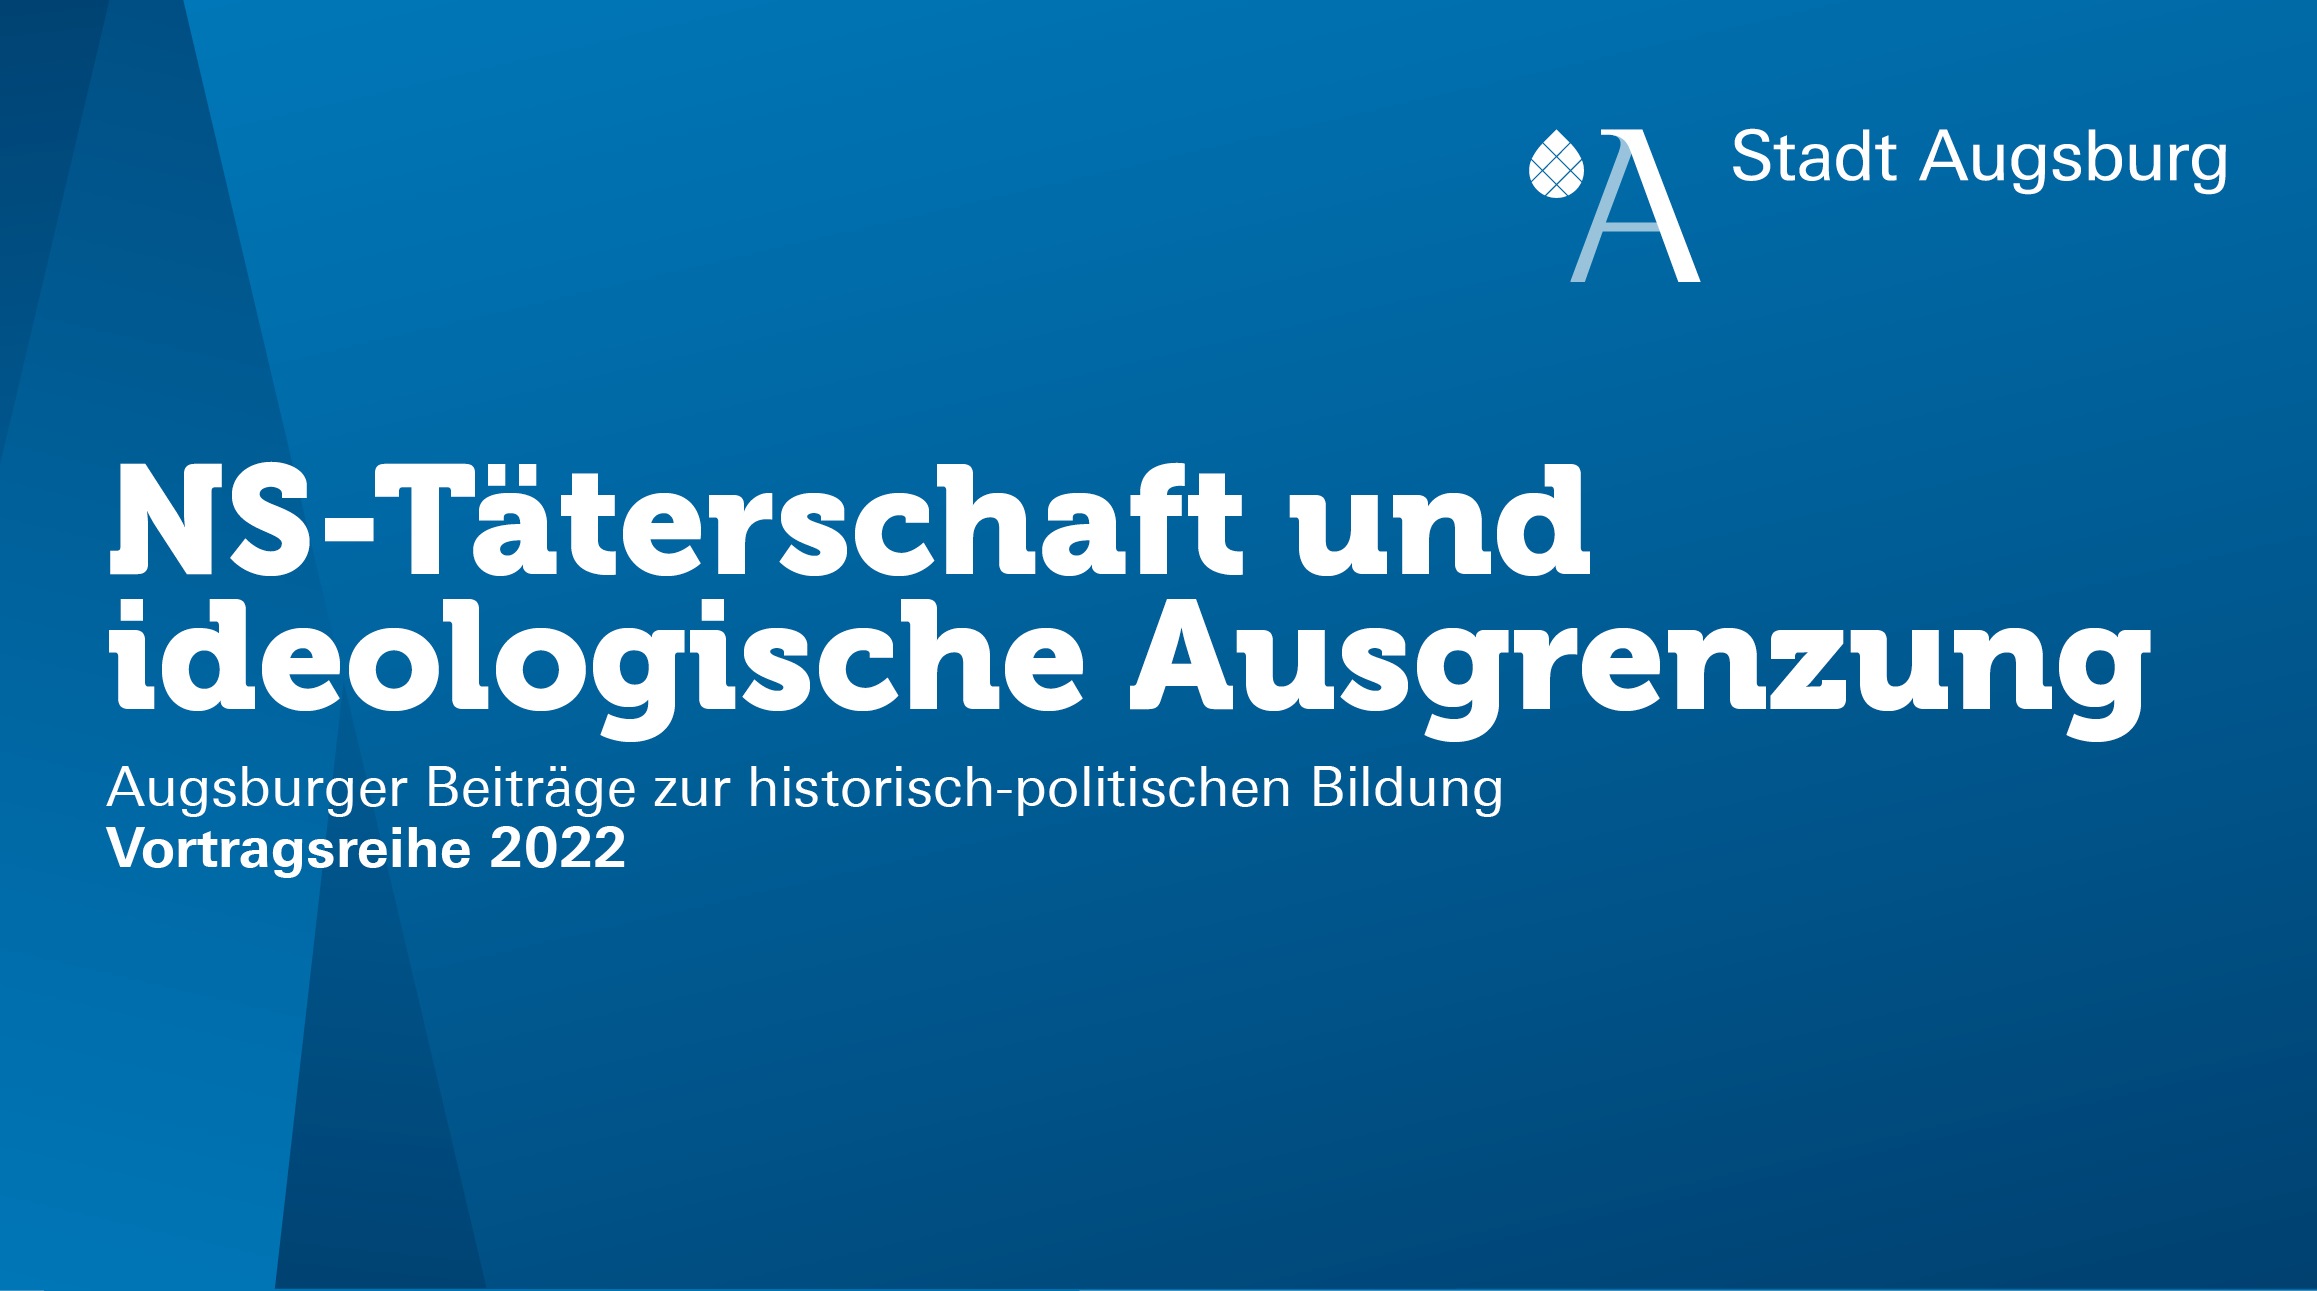 NS-Täterschaft und ideologische Ausgrenzung - Augsburger Beiträge zur historisch-politischen Bildung